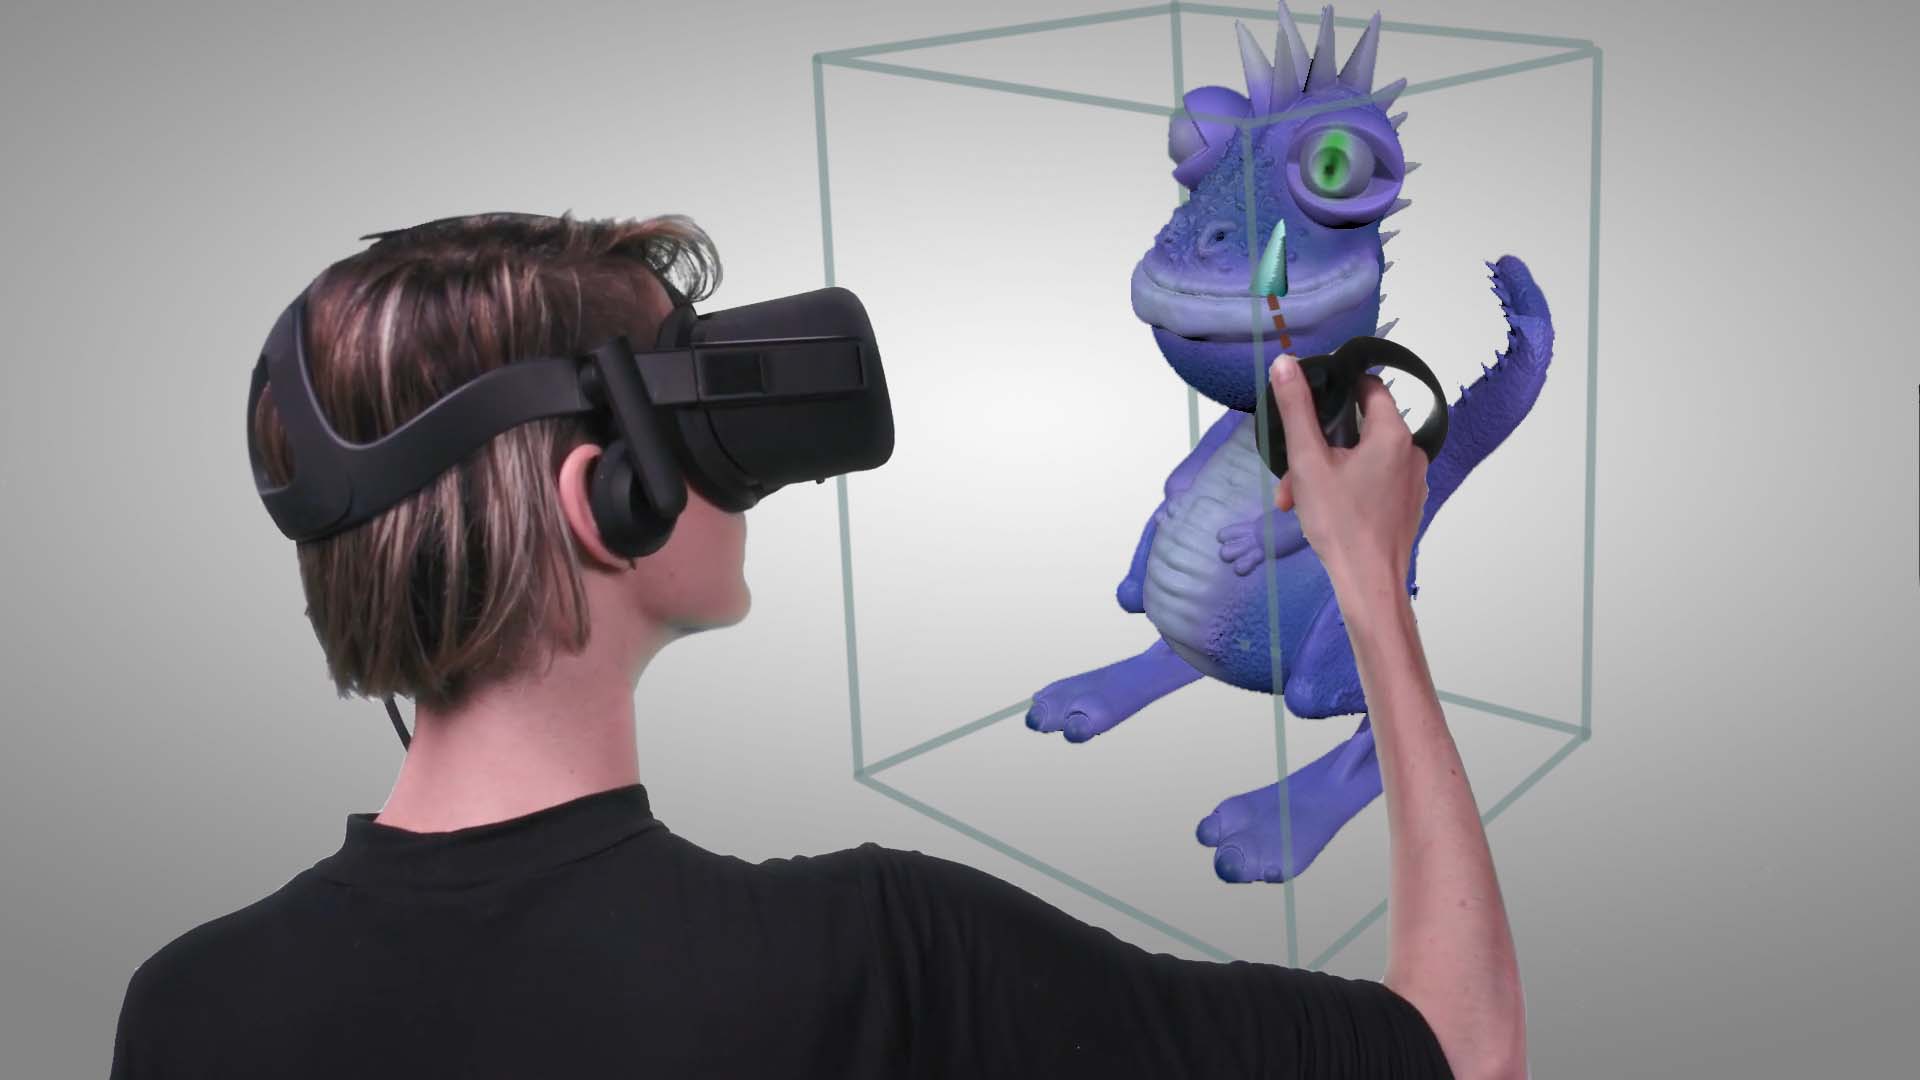 Vr уроки. 3d моделирование VR. Виртуальная реальность 3д моделирование. Рисование в виртуальной реальности. 3d моделирование в виртуальной реальности.